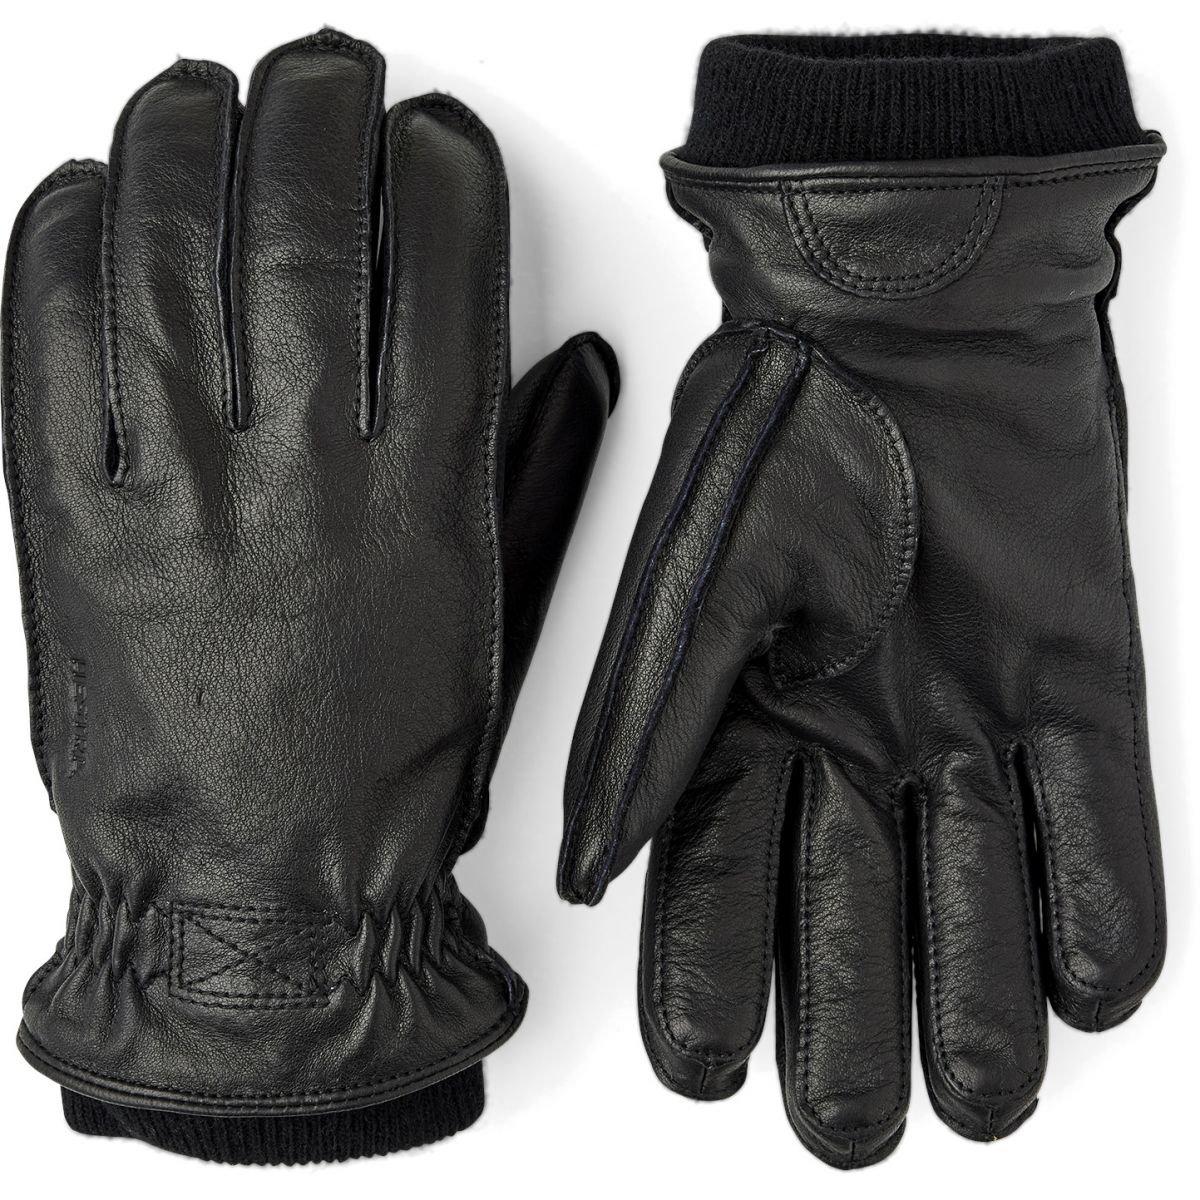 5: Hestra Olav, handsker, sort